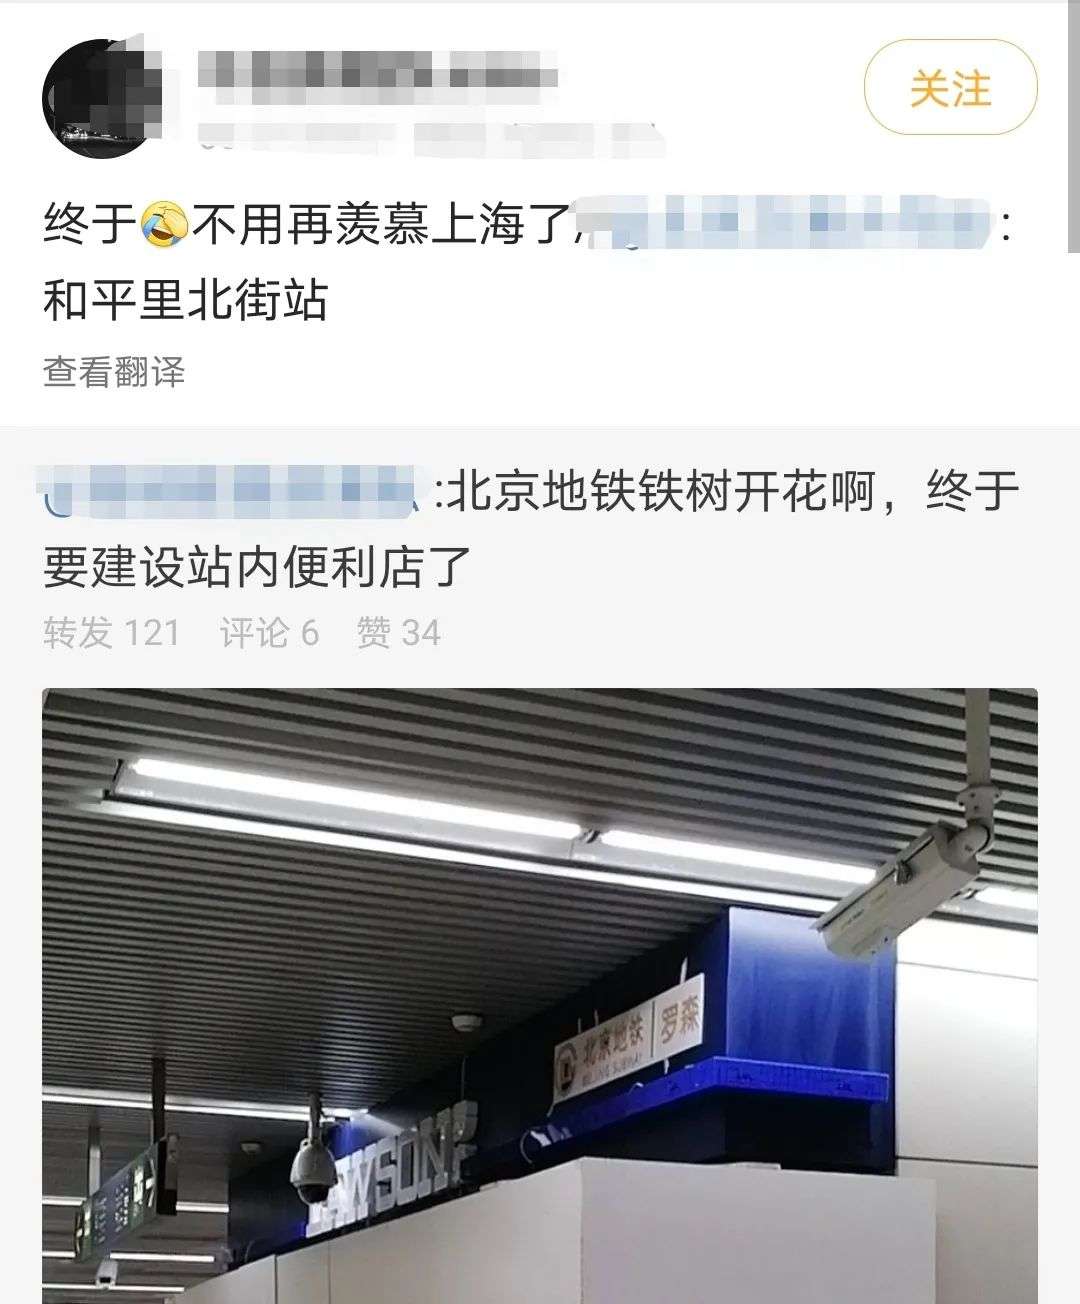 北京地铁便利店「重启」